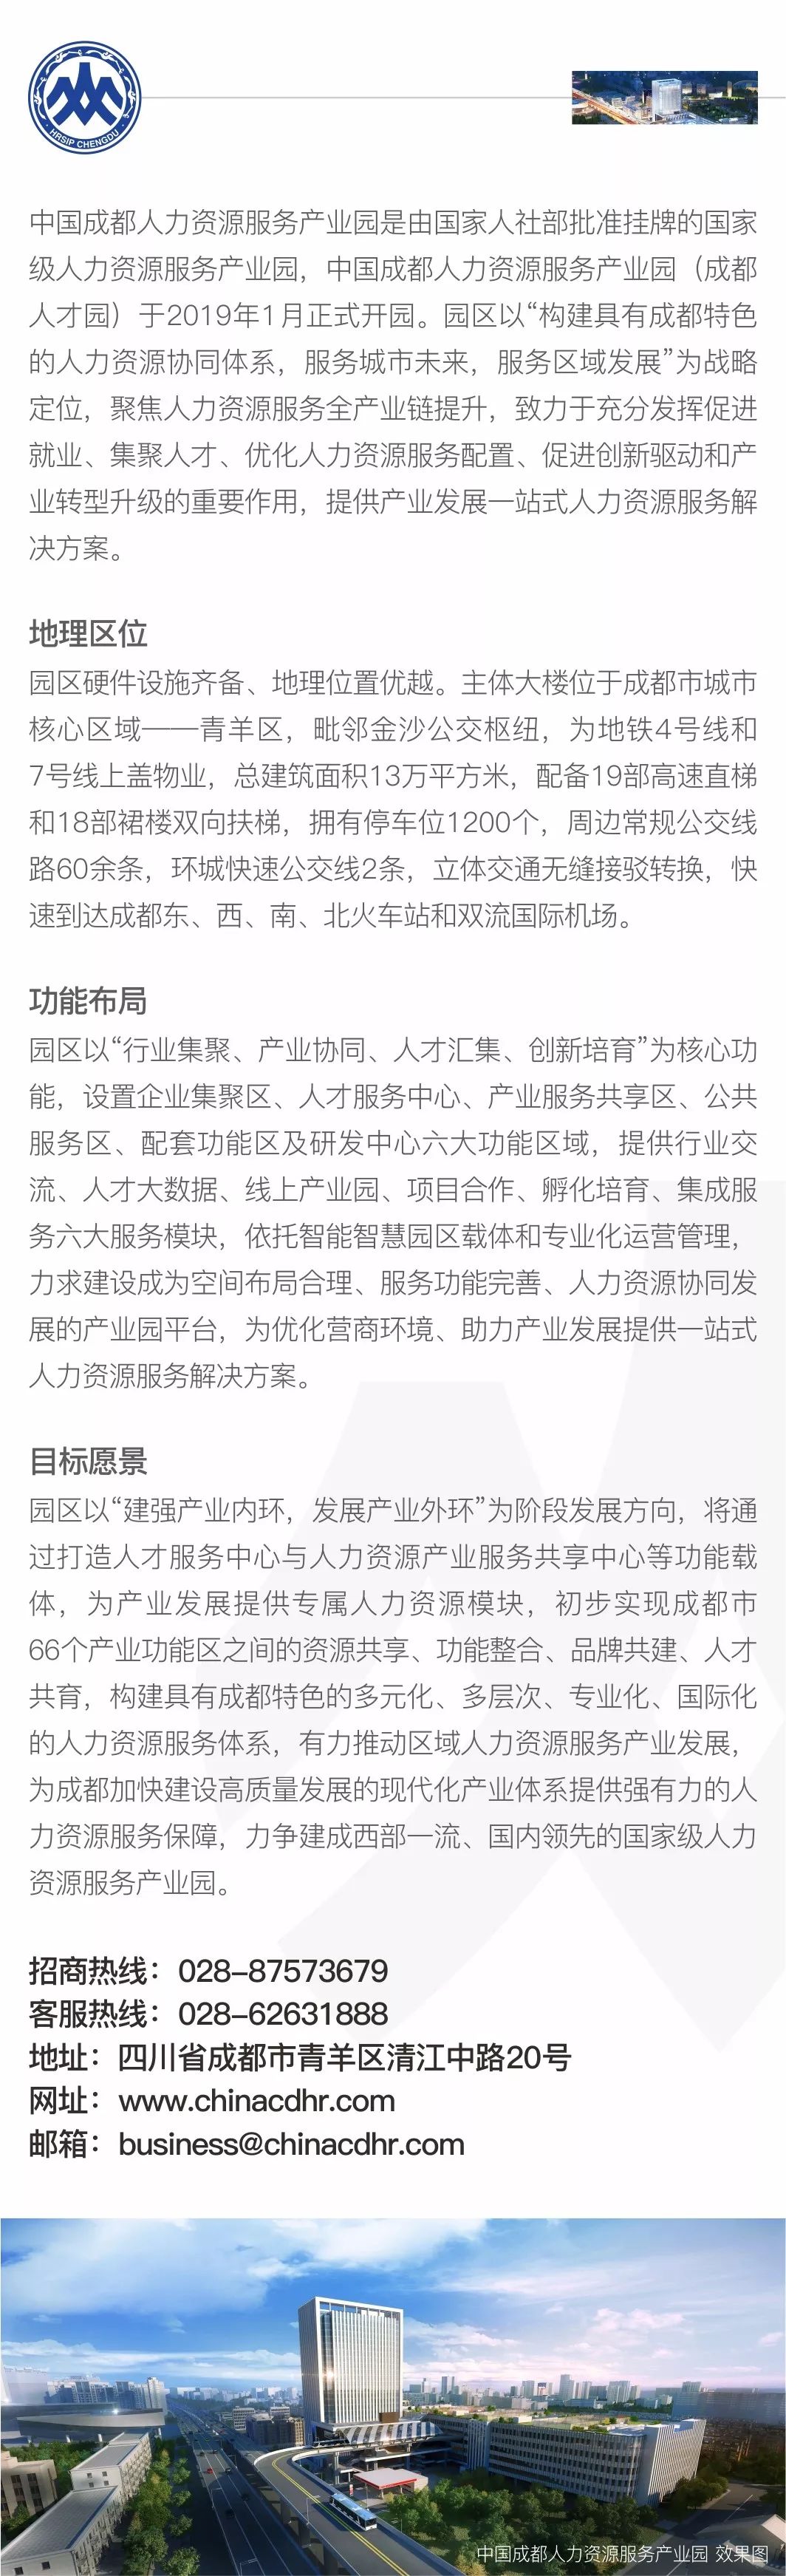 四川省疫情应急指挥部发布第17号公告